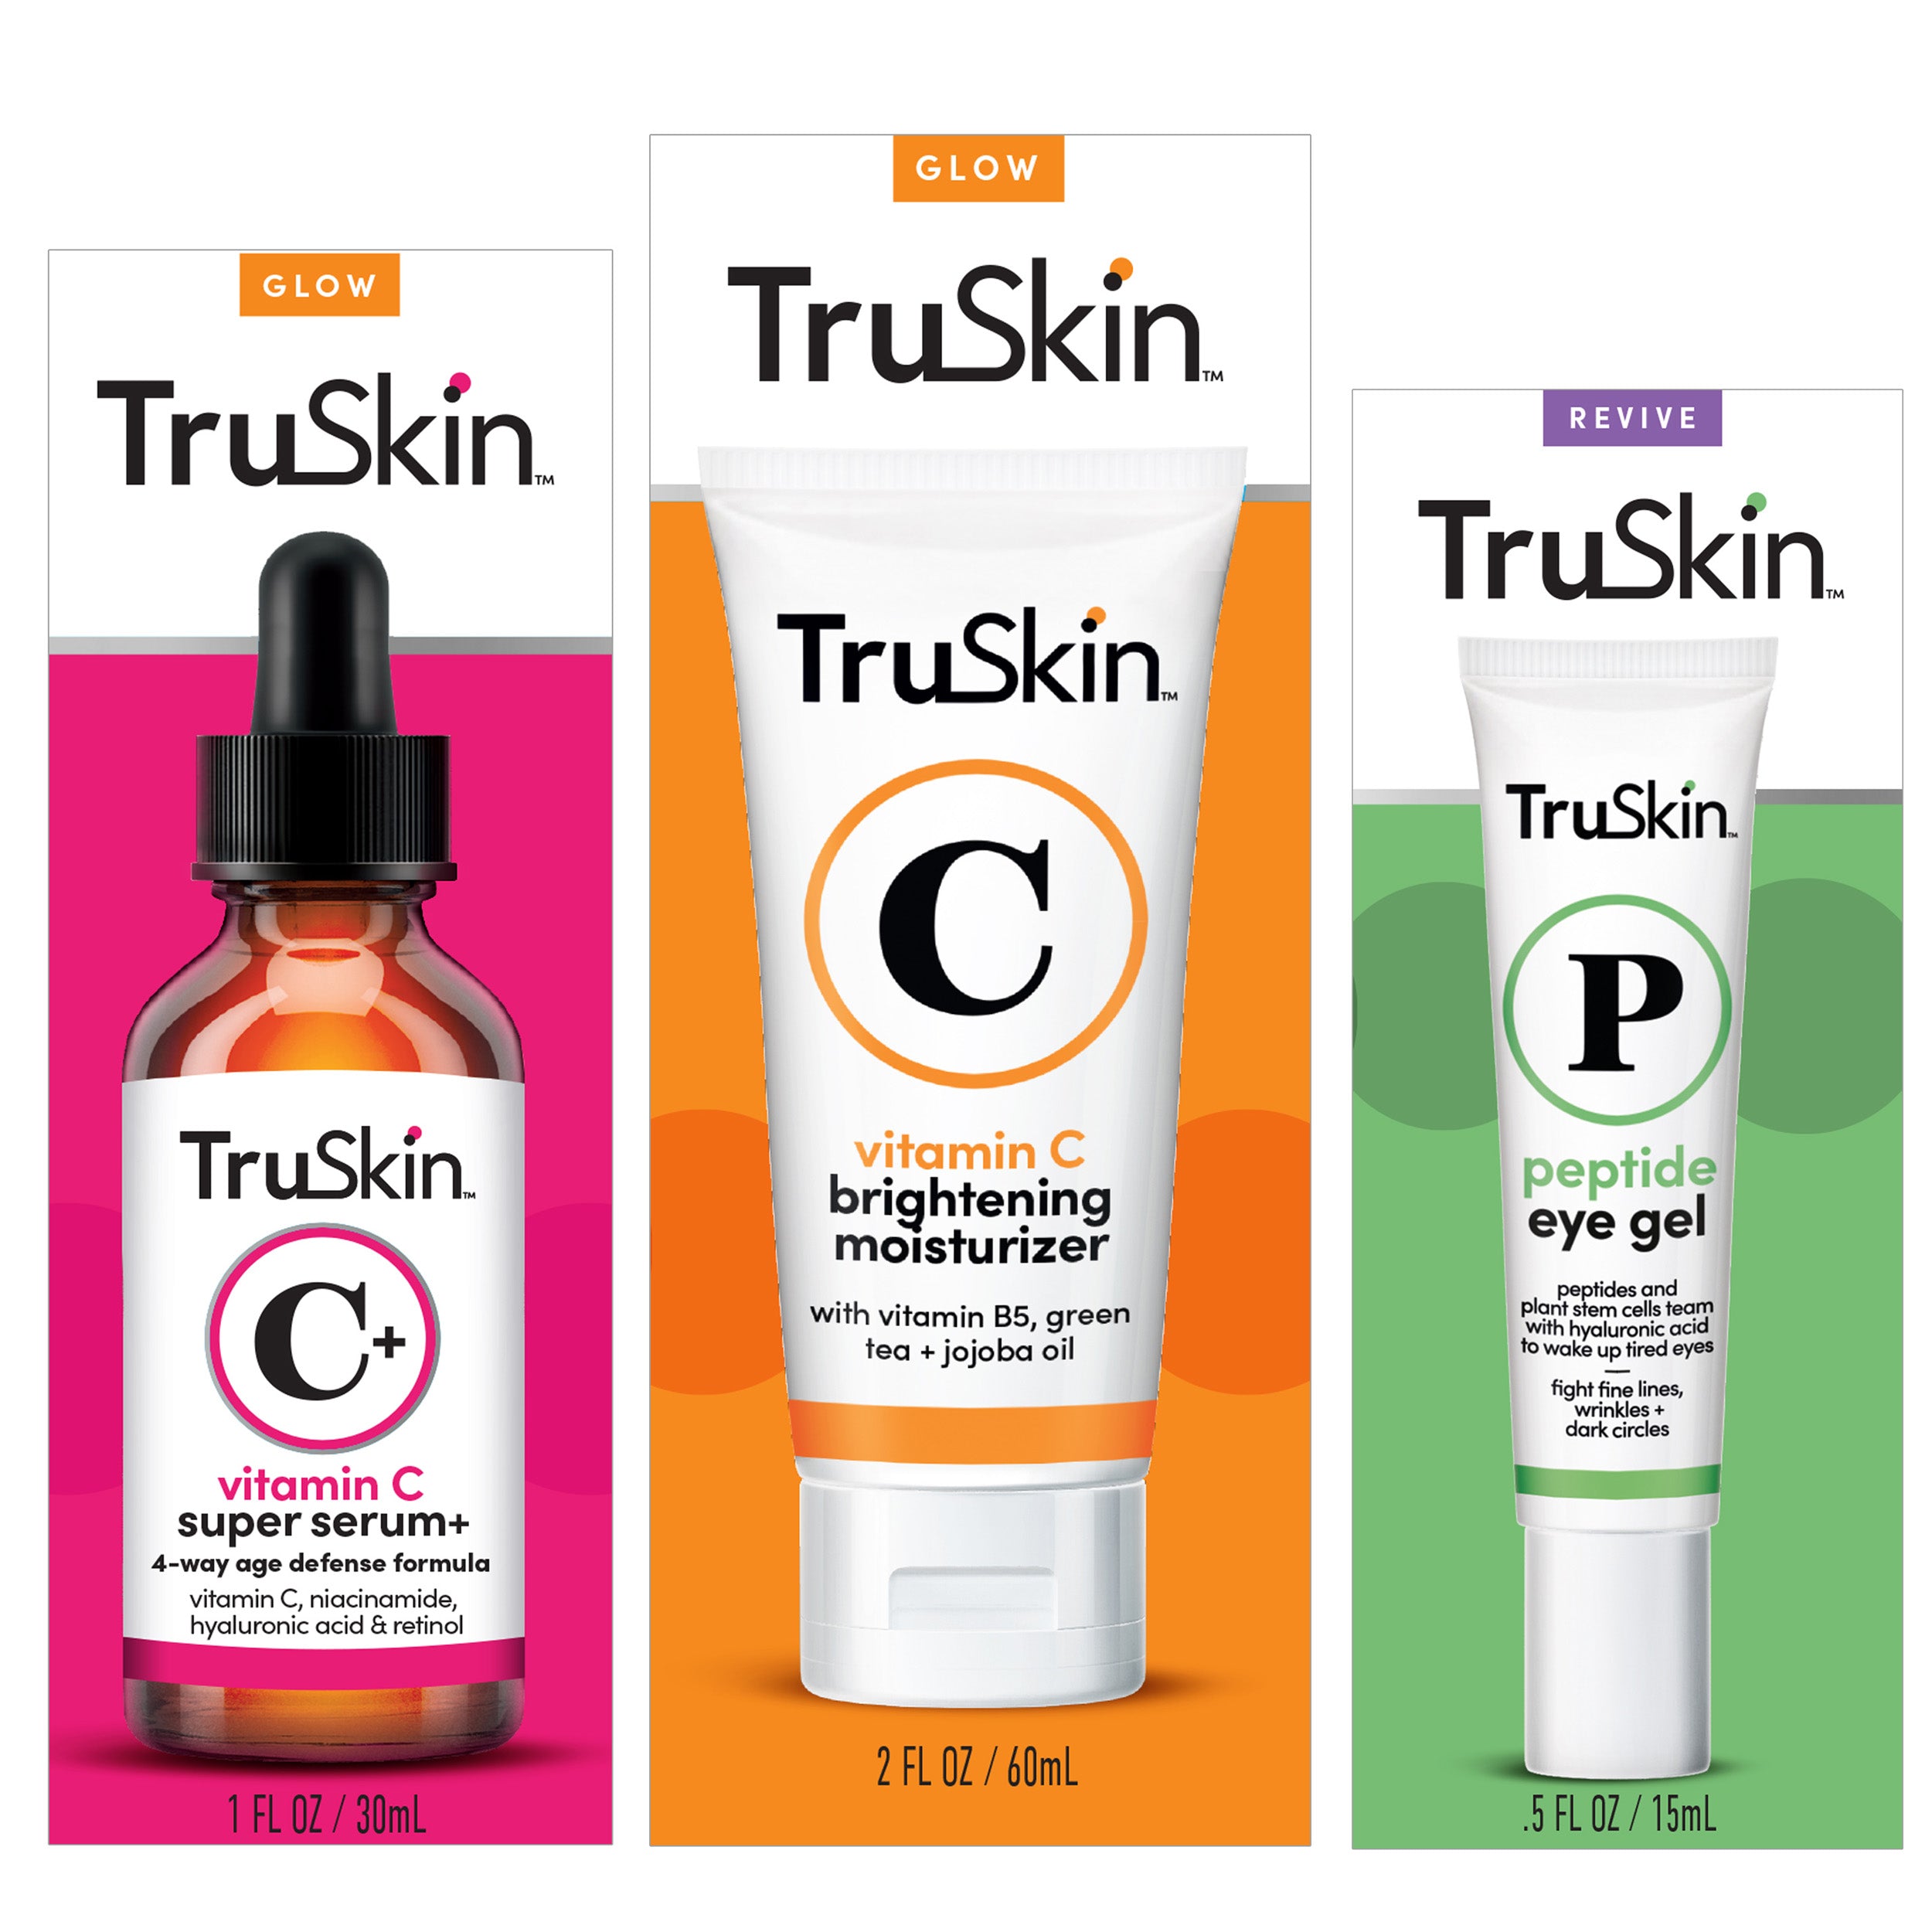 TruSkin Daily Essentials Trio with Vitamin C Serum, Eye Gel and Vitamin C Moisturizer